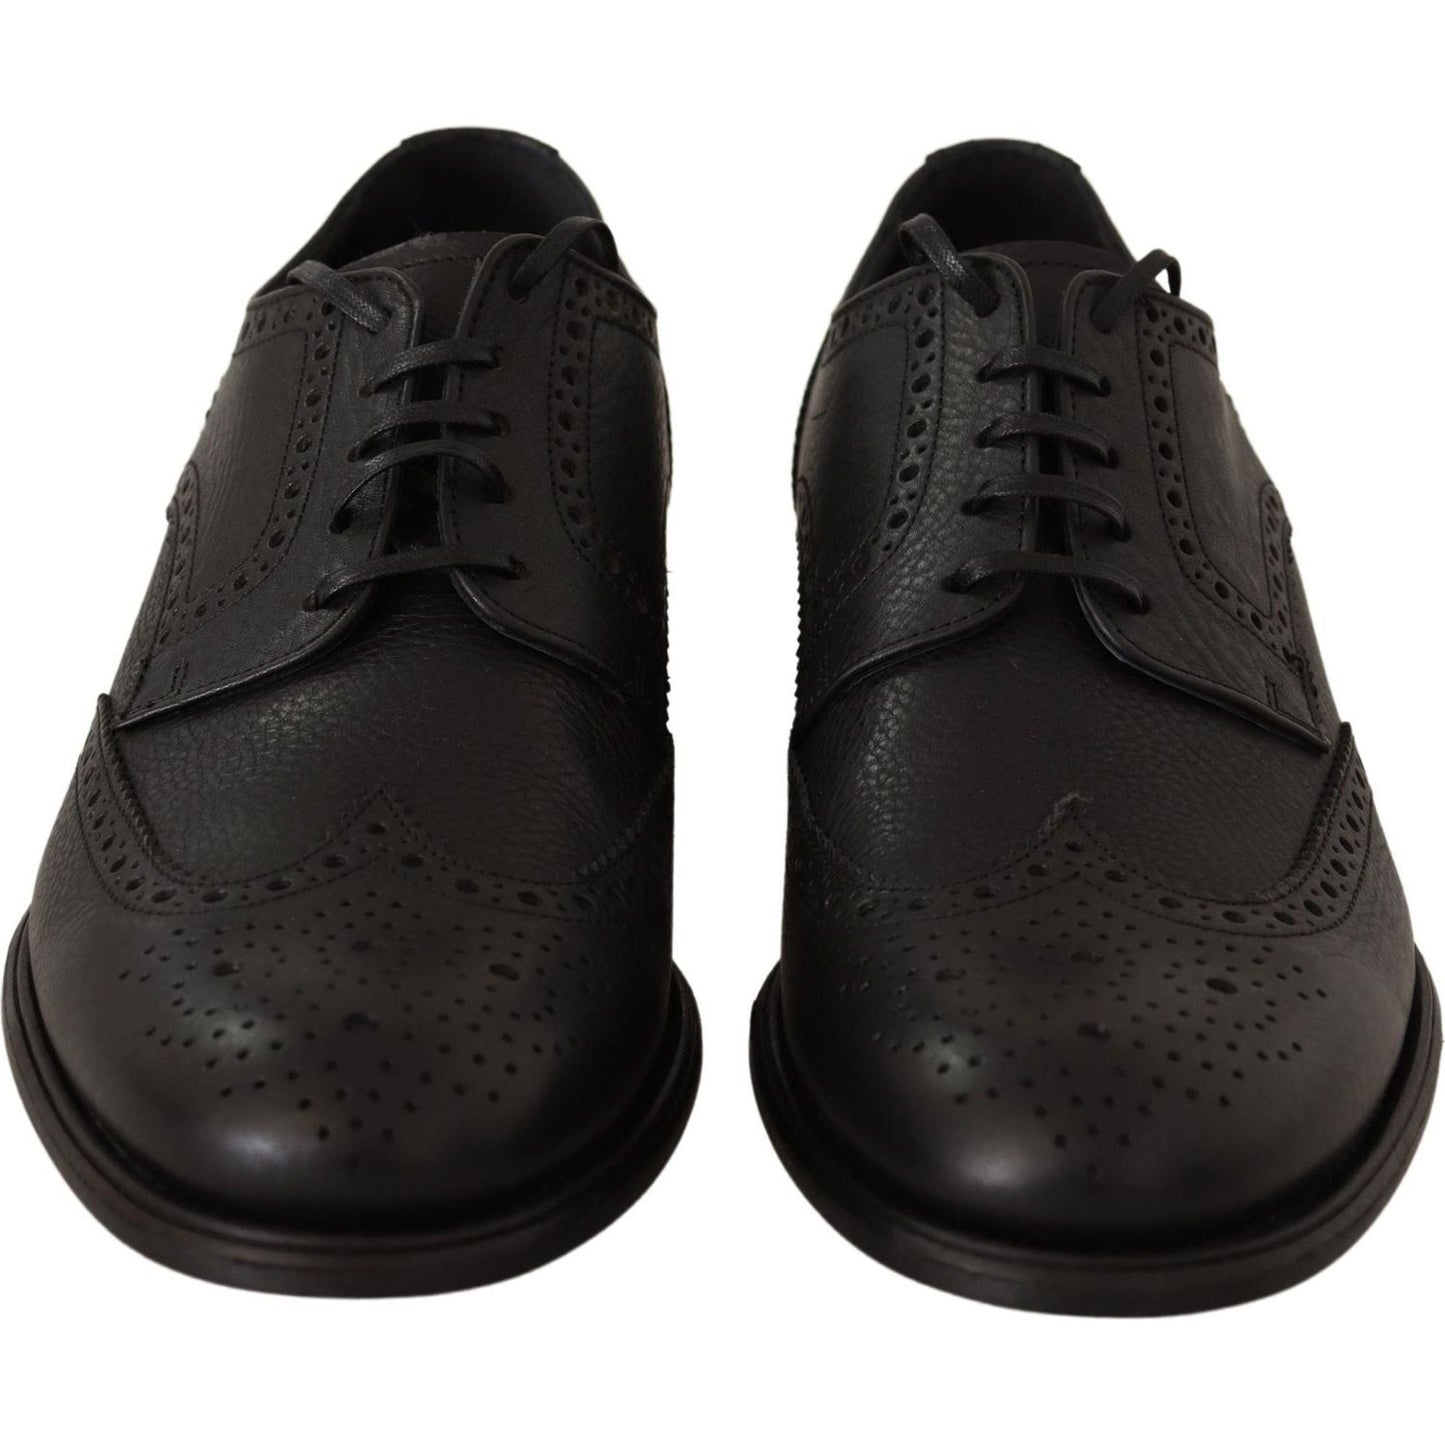 Dolce & Gabbana Elegant Black Leather Derby Wingtip Shoes black-leather-oxford-wingtip-formal-dress-shoes-1 IMG_4902-1-64a99028-59c.jpg